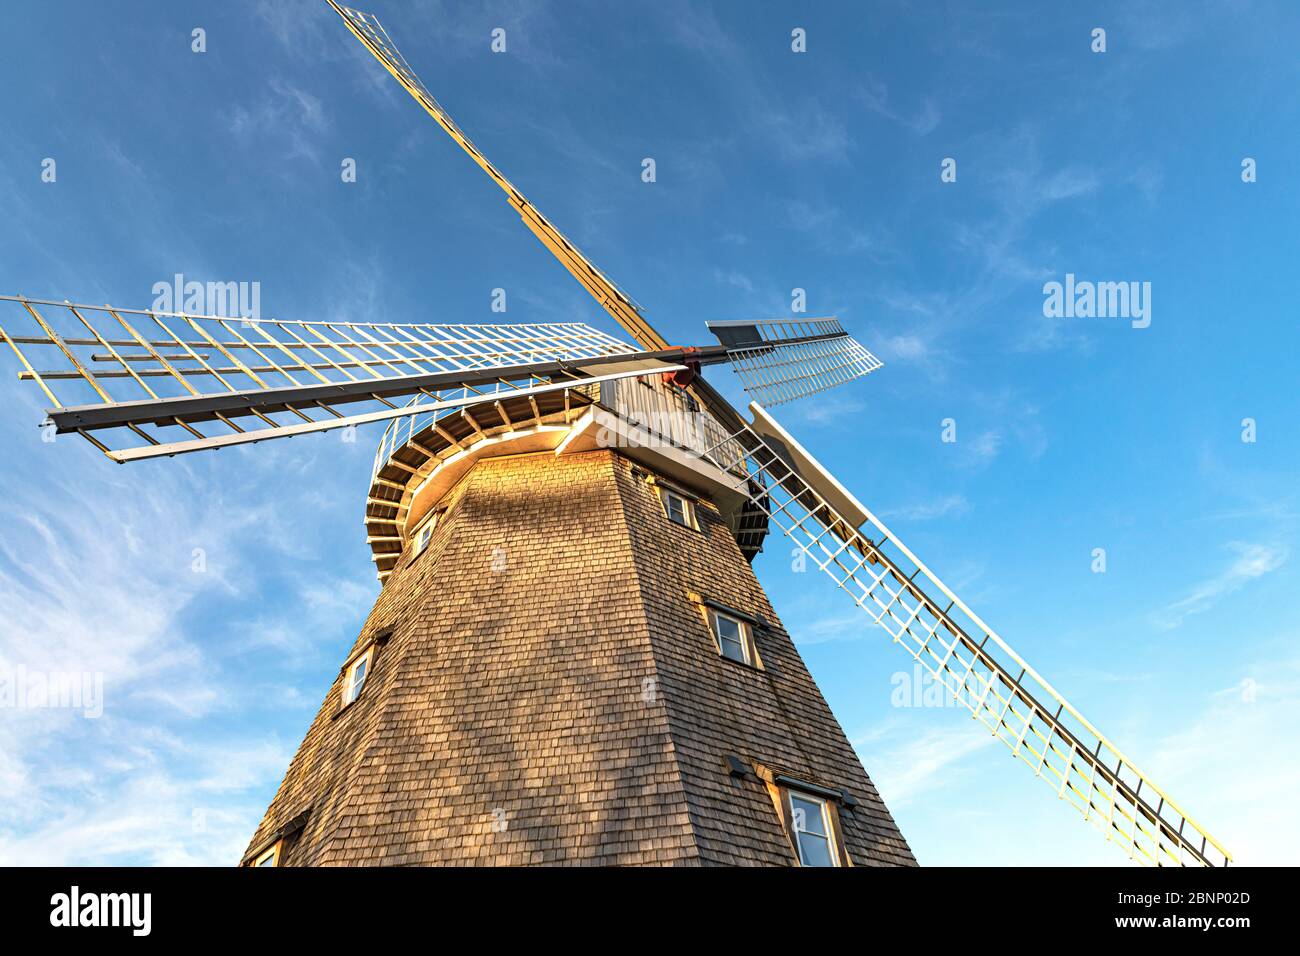 ancien moulin à vent démantelé, vu d'en dessous contre un ciel bleu Banque D'Images